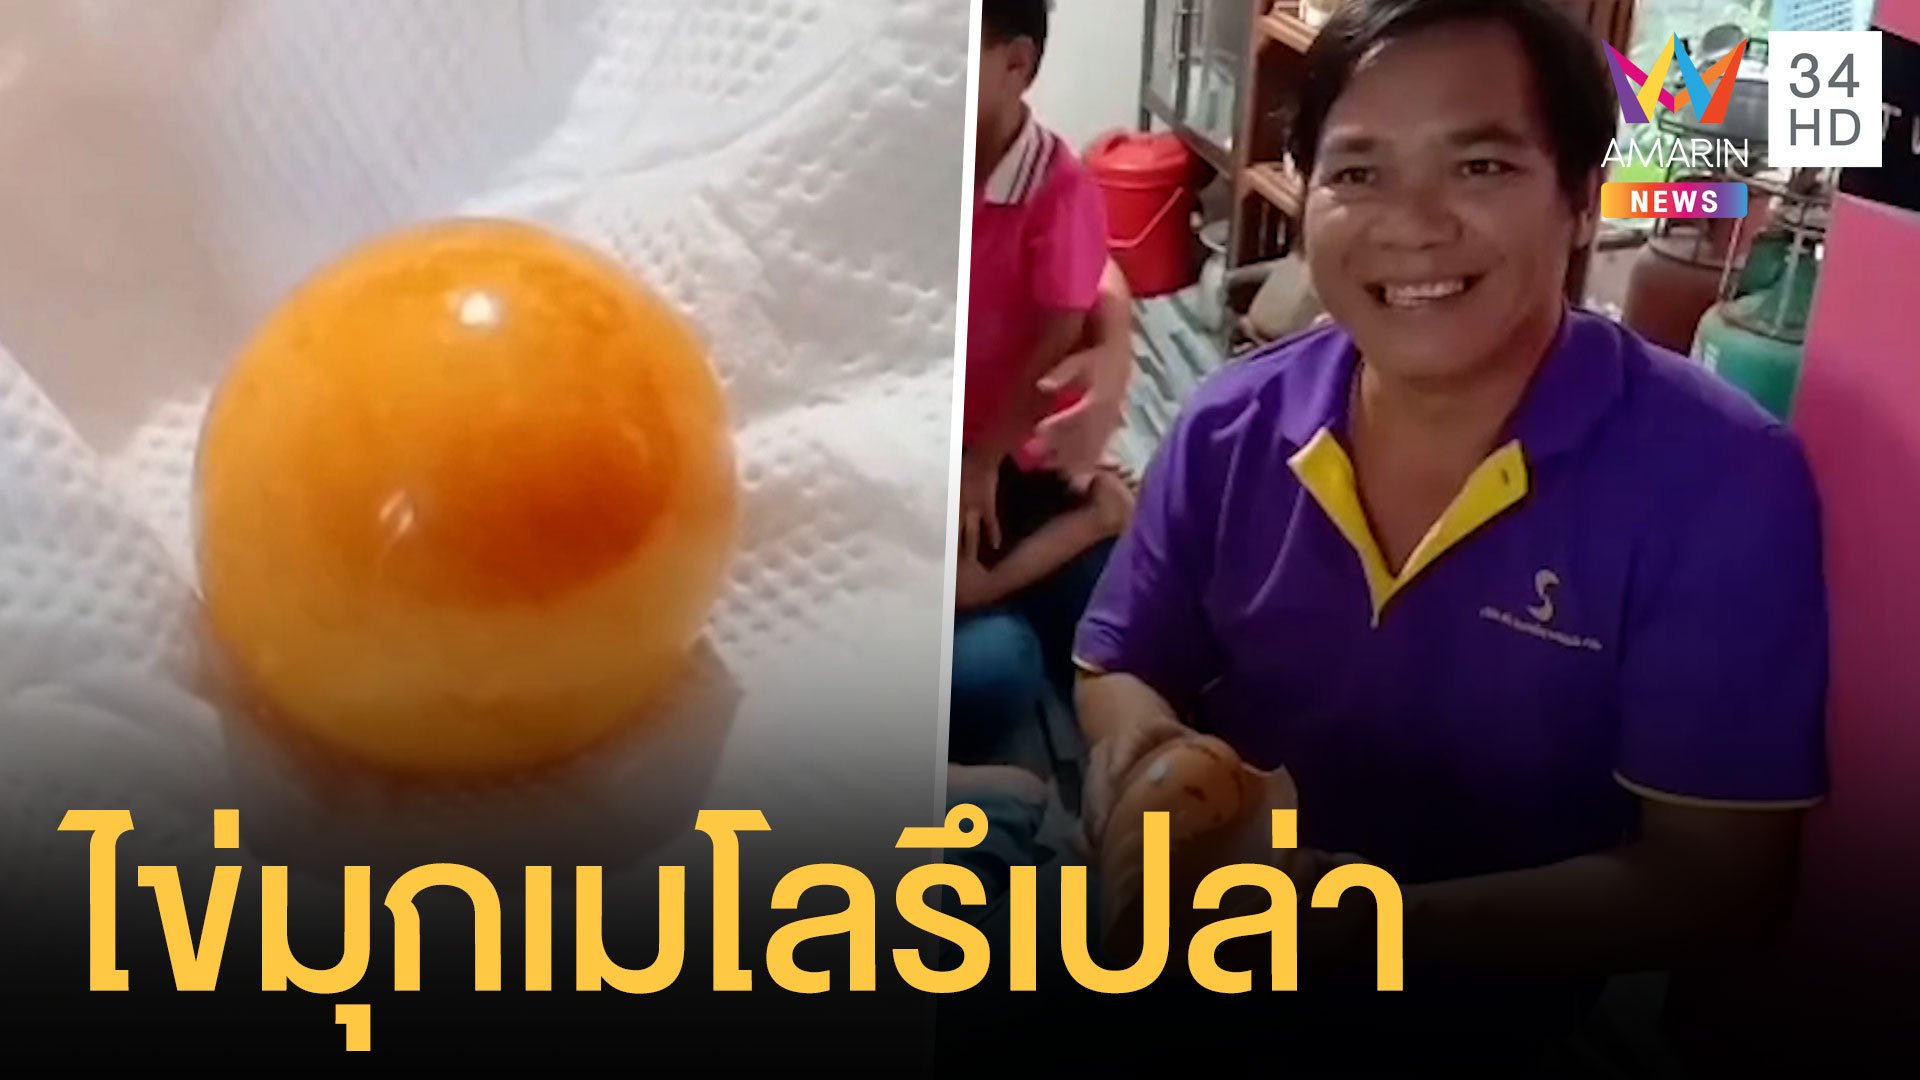 หนุ่มไปซื้อหอยมากินเจอมุกสีส้มคล้ายไข่มุกเมโล | ข่าวอรุณอมรินทร์ | 11 ก.พ. 64 | AMARIN TVHD34